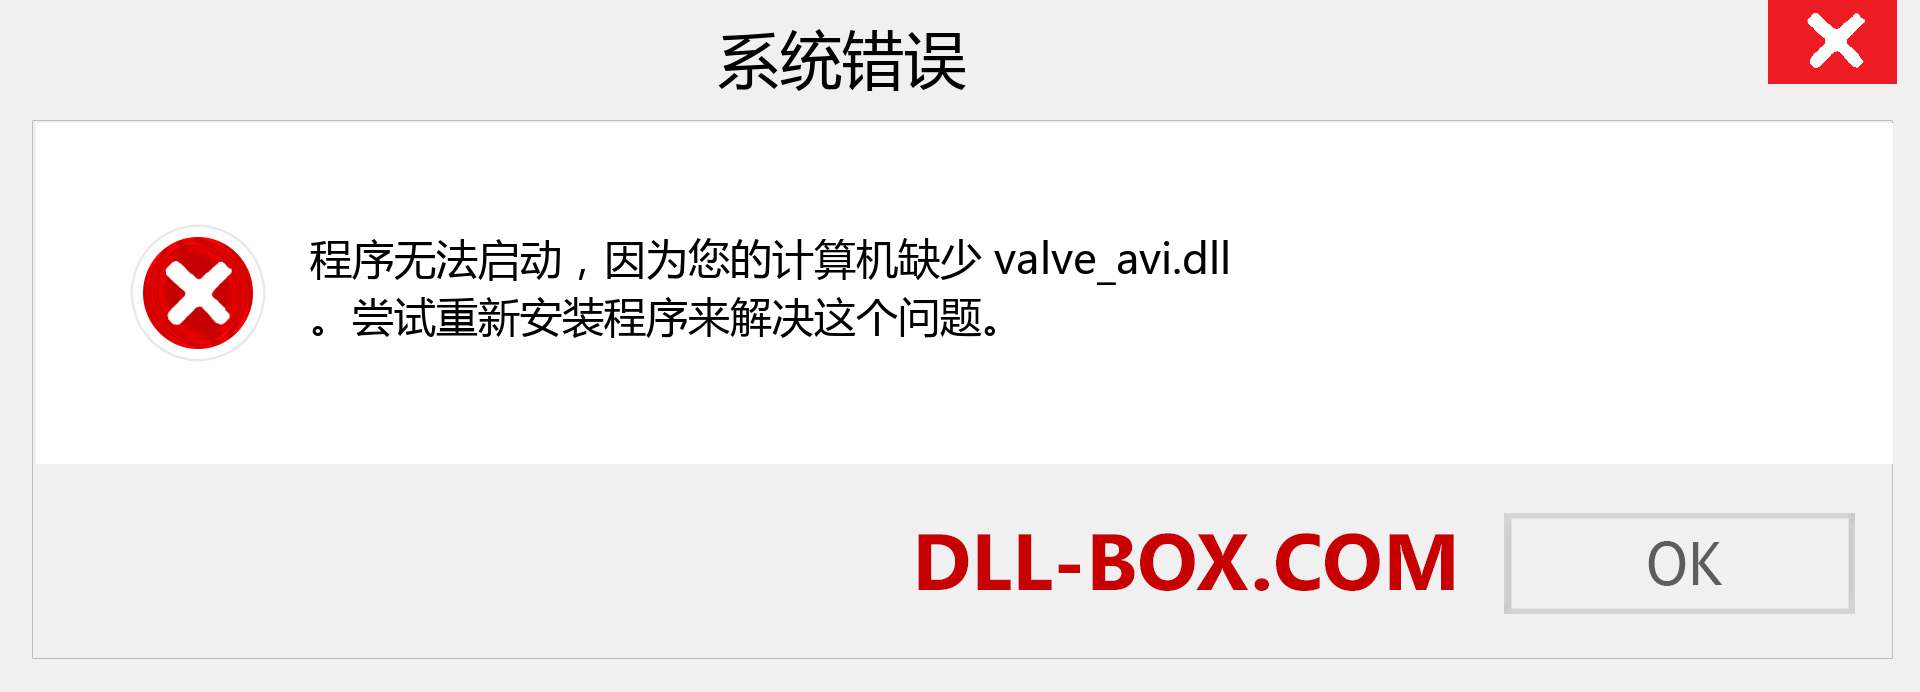 valve_avi.dll 文件丢失？。 适用于 Windows 7、8、10 的下载 - 修复 Windows、照片、图像上的 valve_avi dll 丢失错误